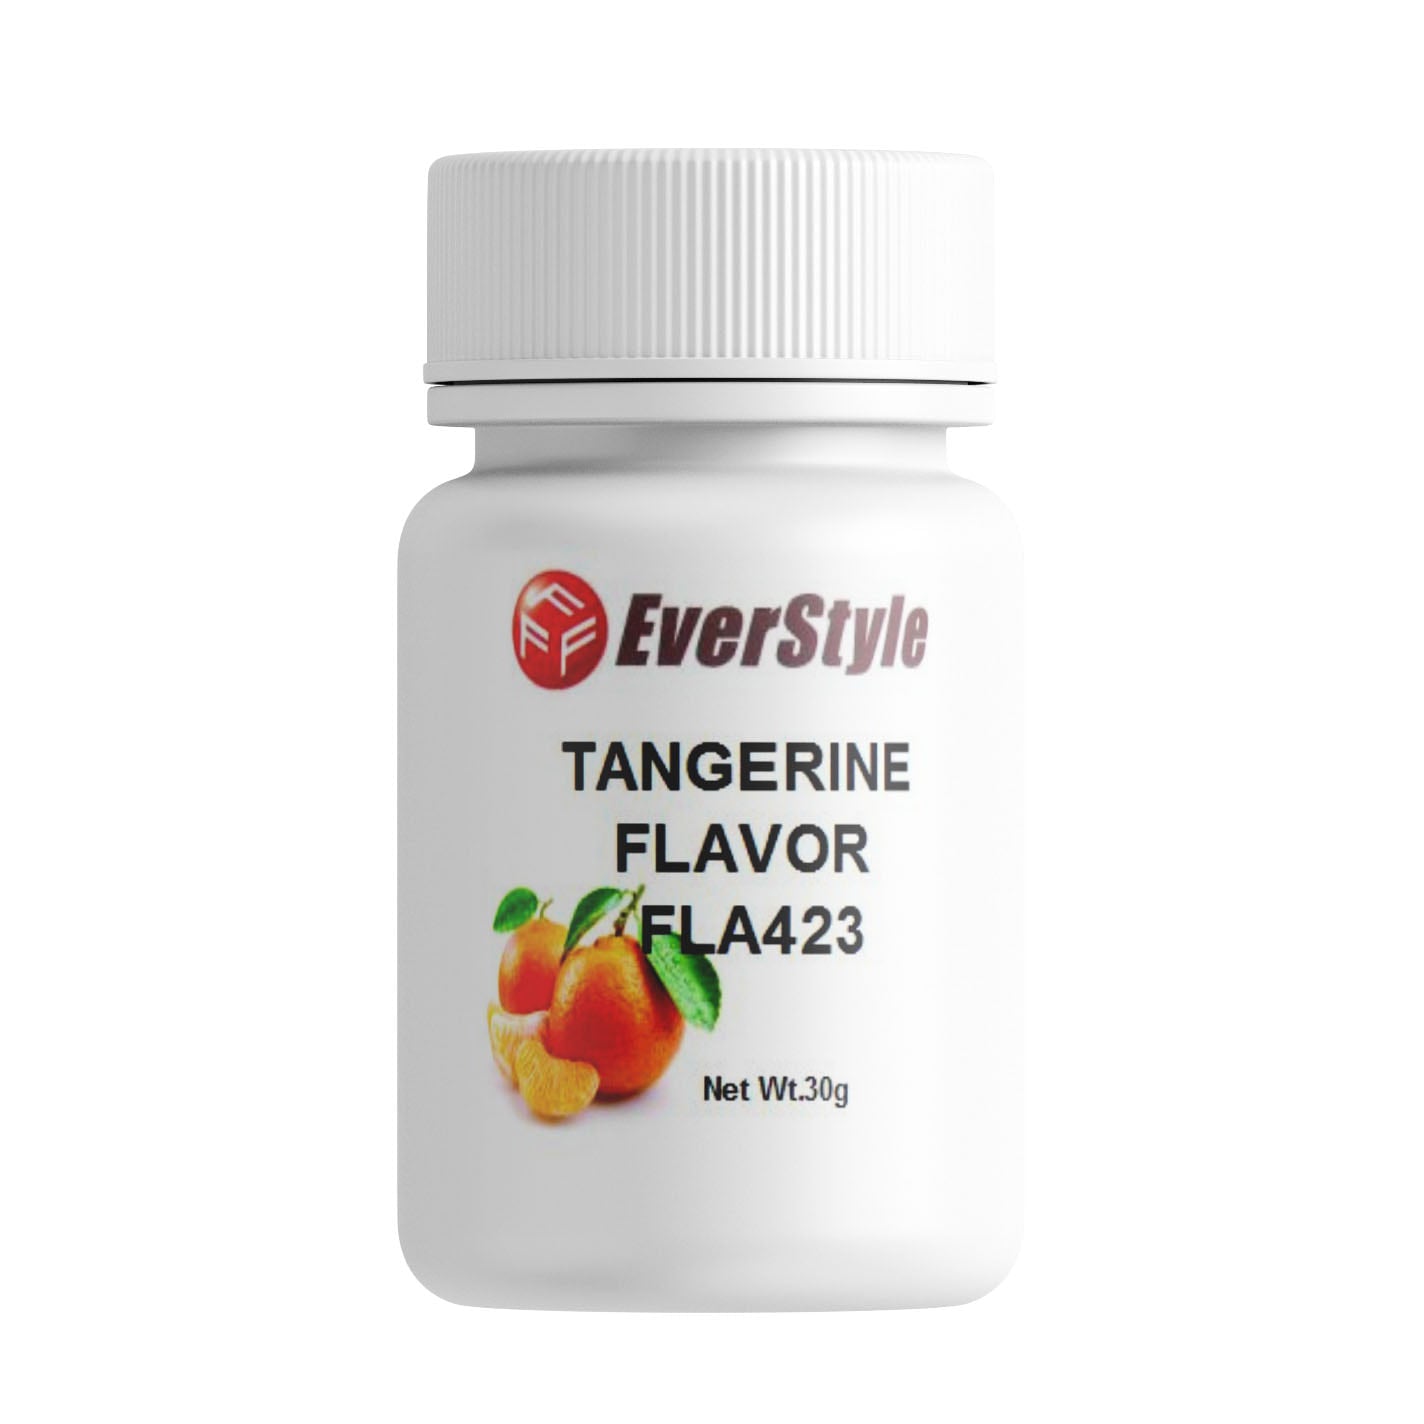 Everstyle Tangerine Flavor 30g (FLA423)